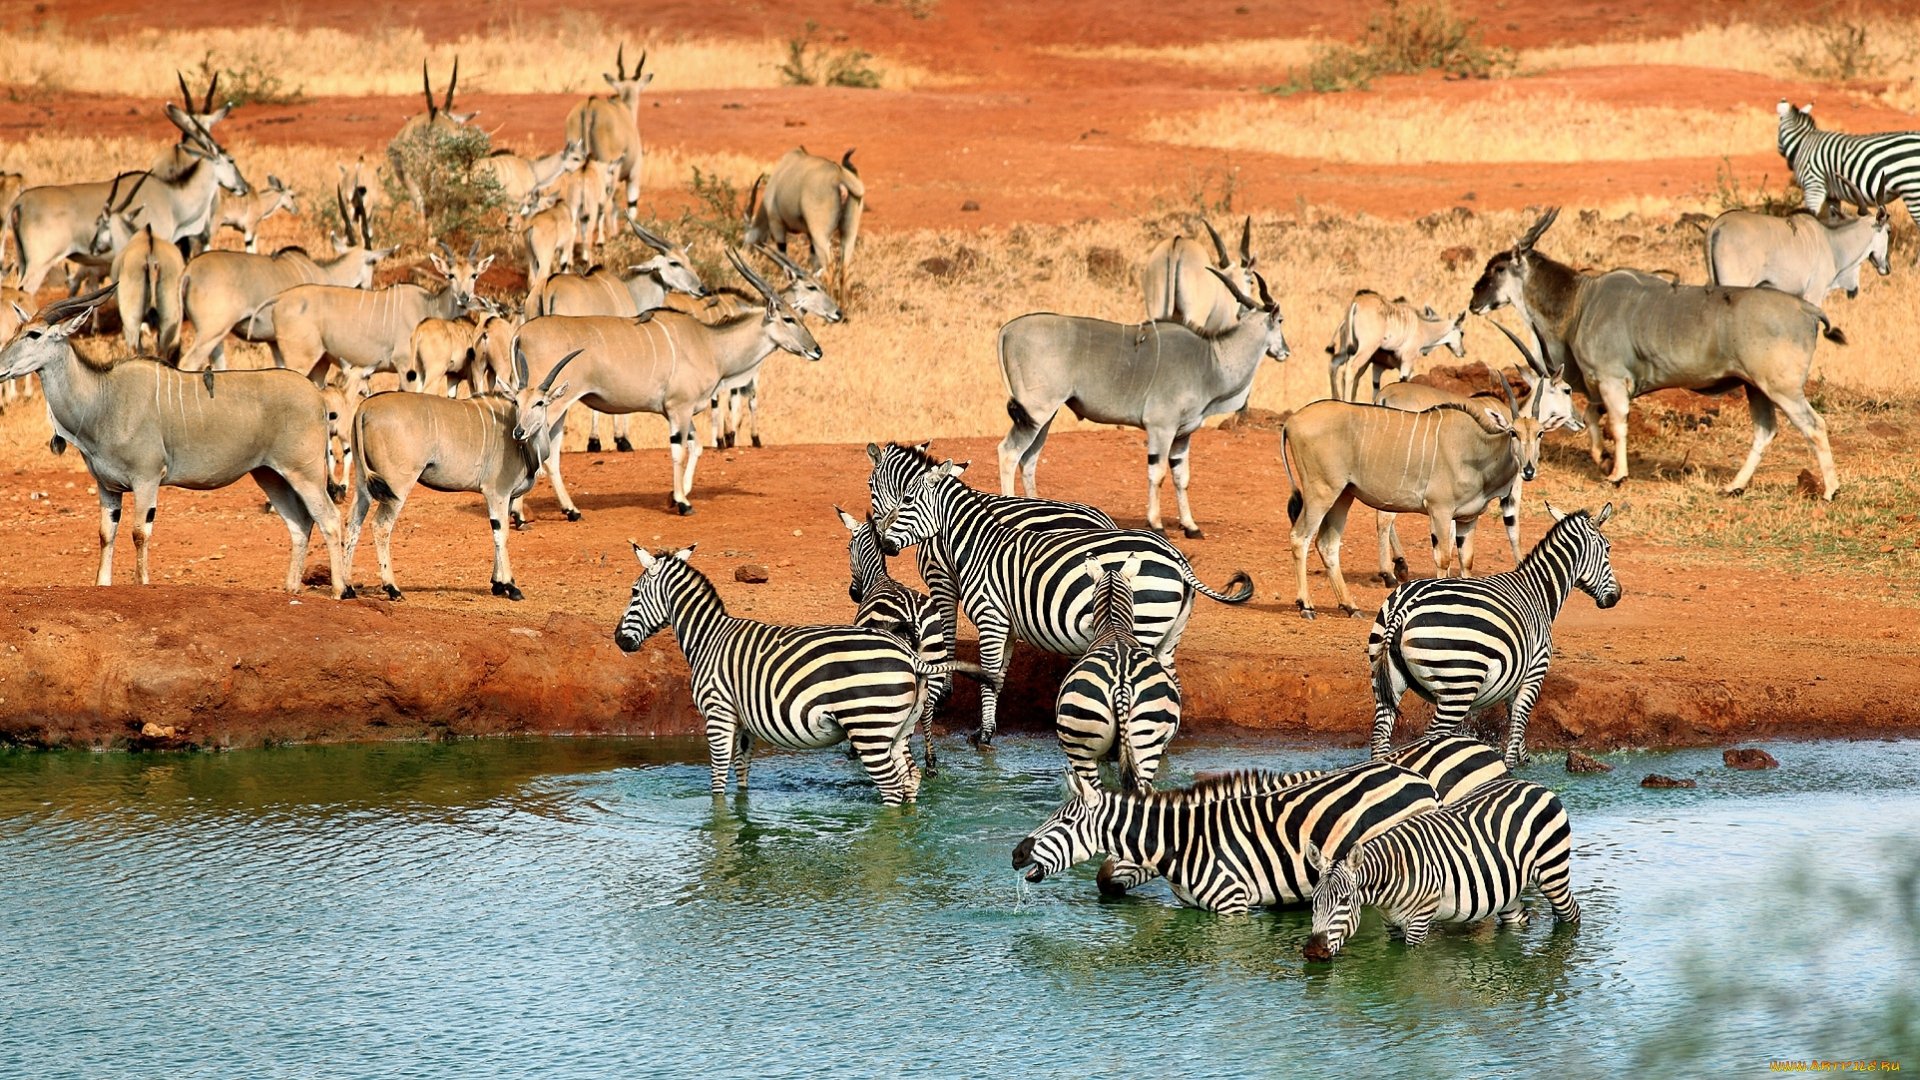 animals in river safari